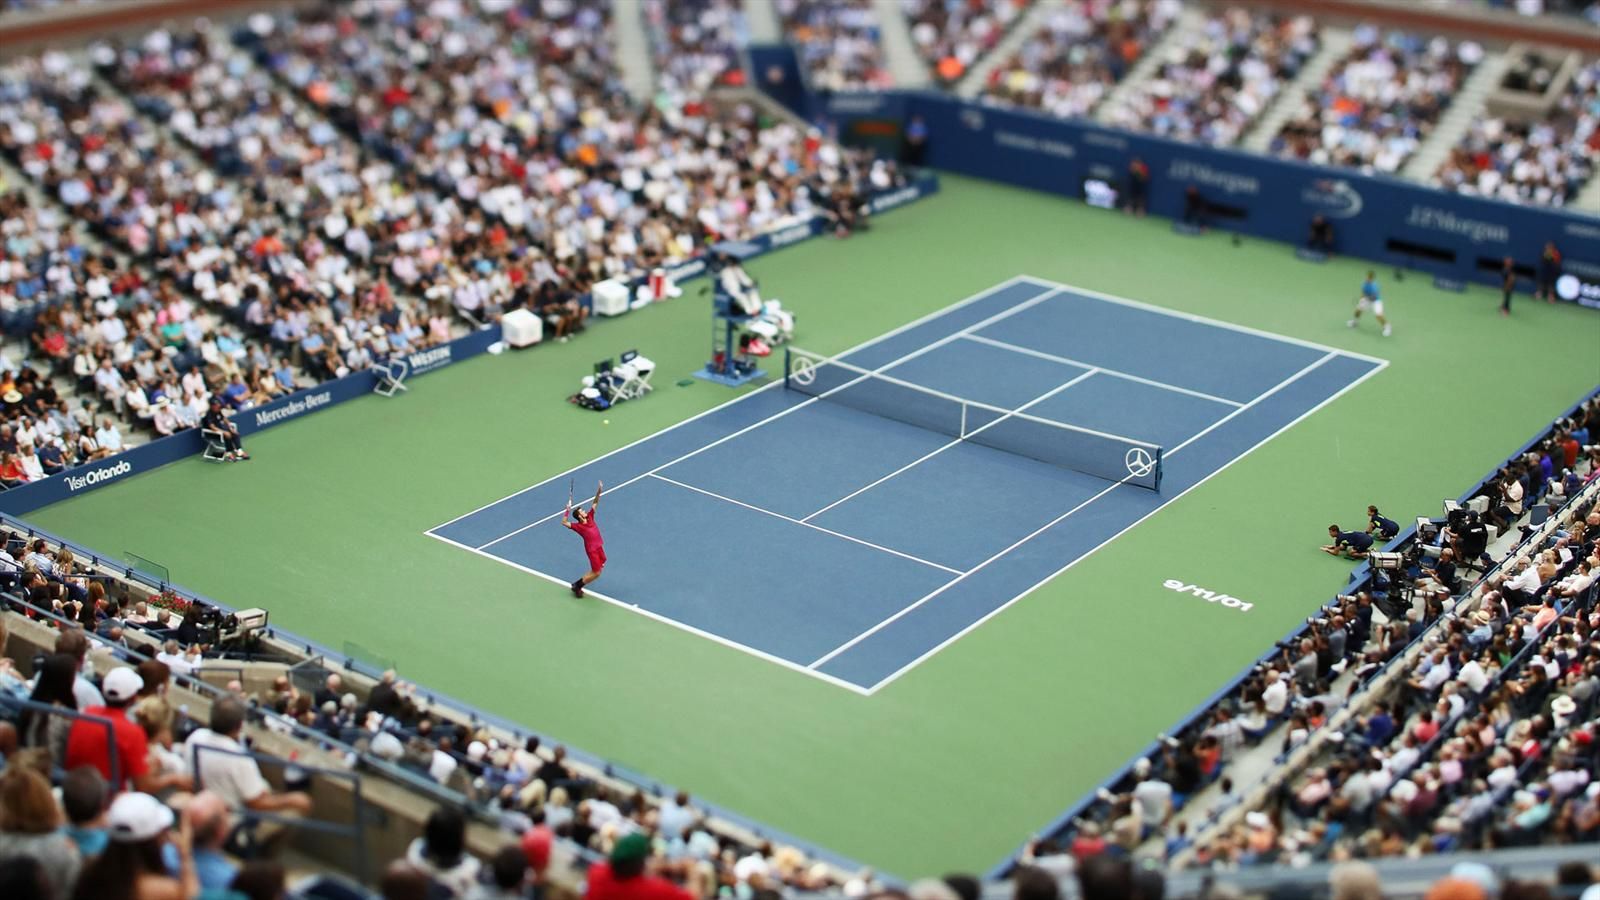 Теннис ставки на спорт скачать полную версию фонбет для андроид скачать